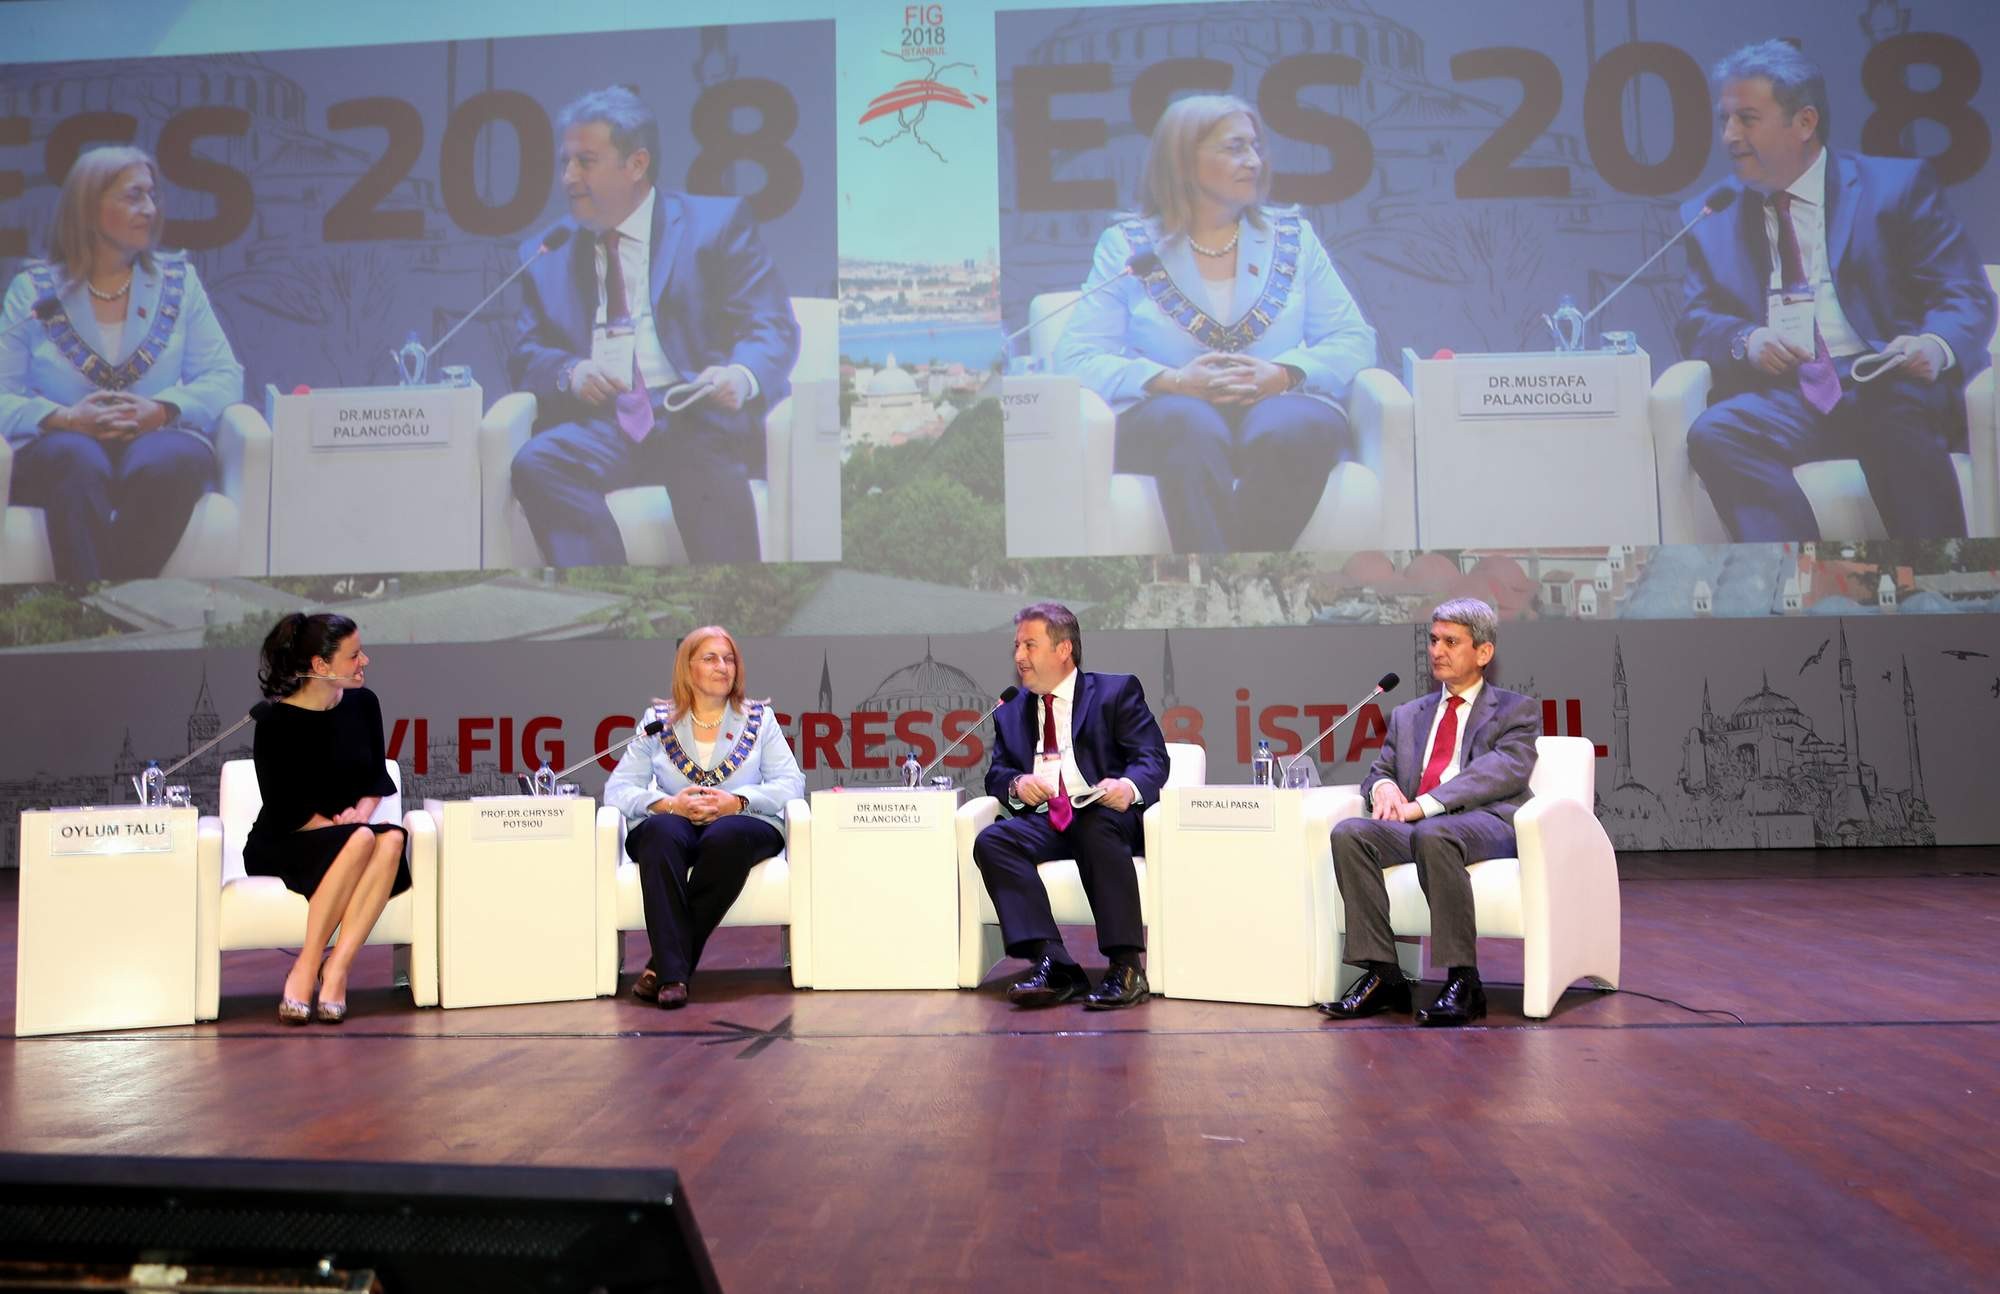 Başkan Palancıoğlu: “Kentsel dönüşümdeki başarımız dünyaya örnek”